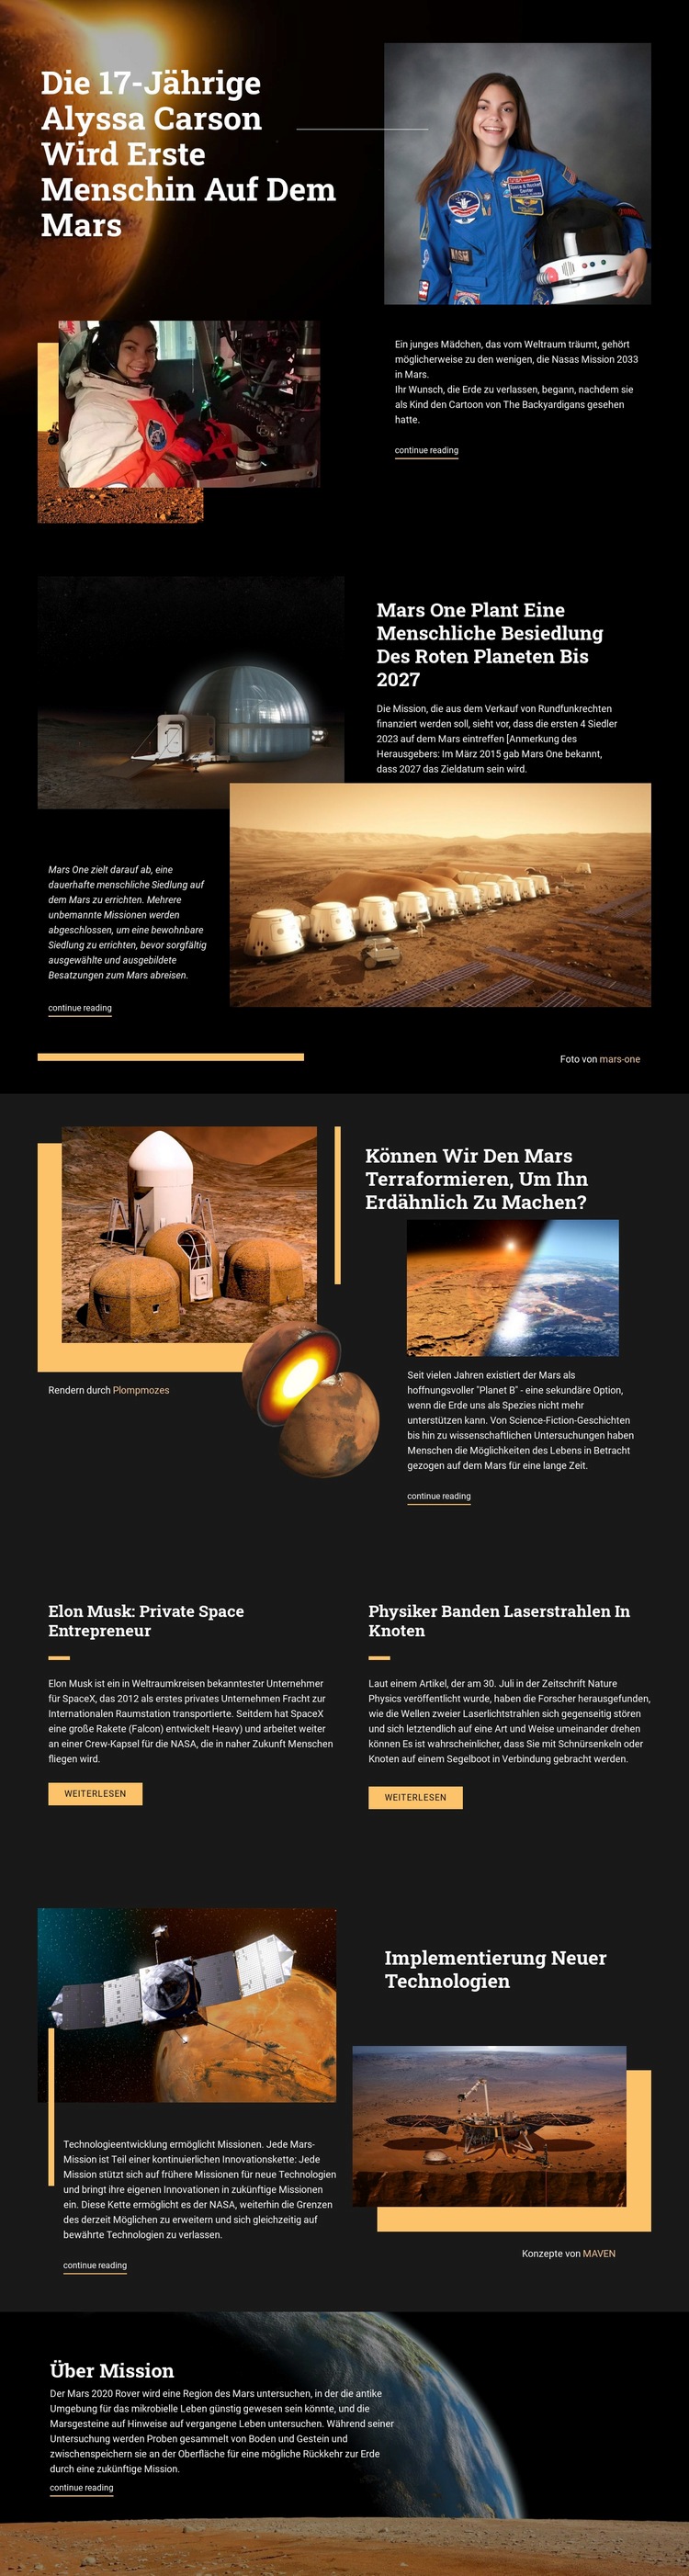 Erster Mensch auf dem Mars Website design